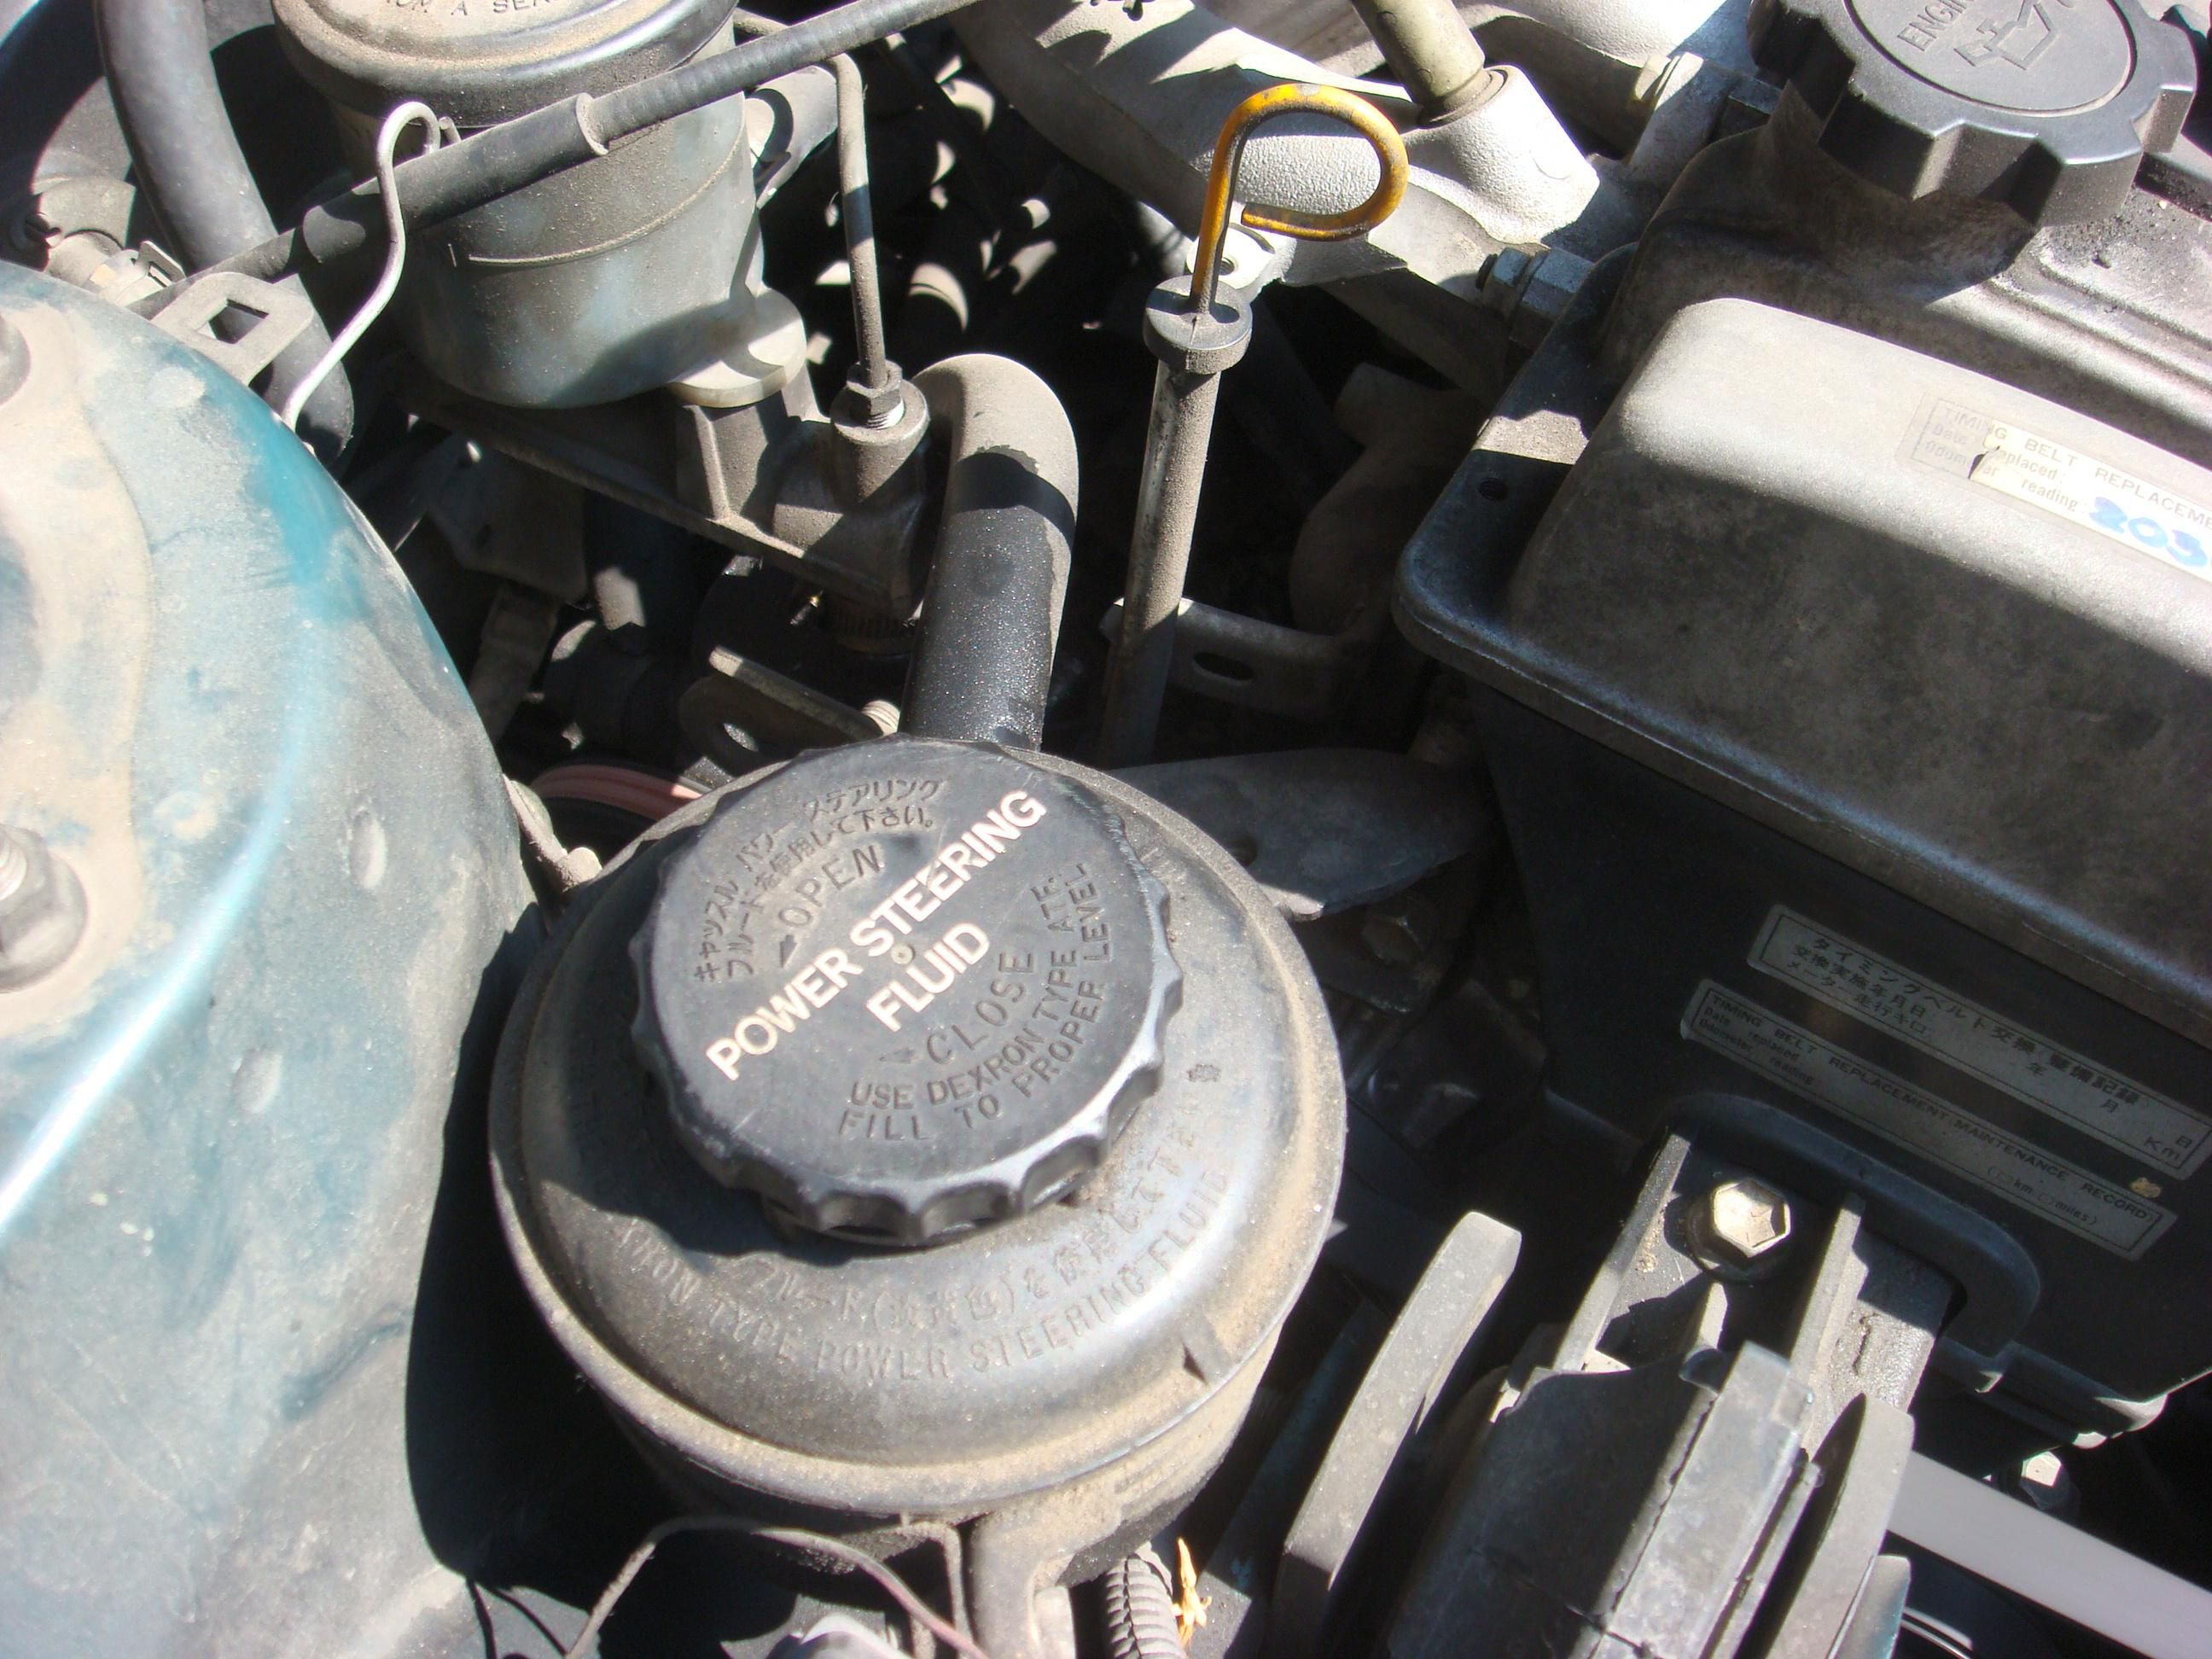 2014 ford ranger oil change instructions